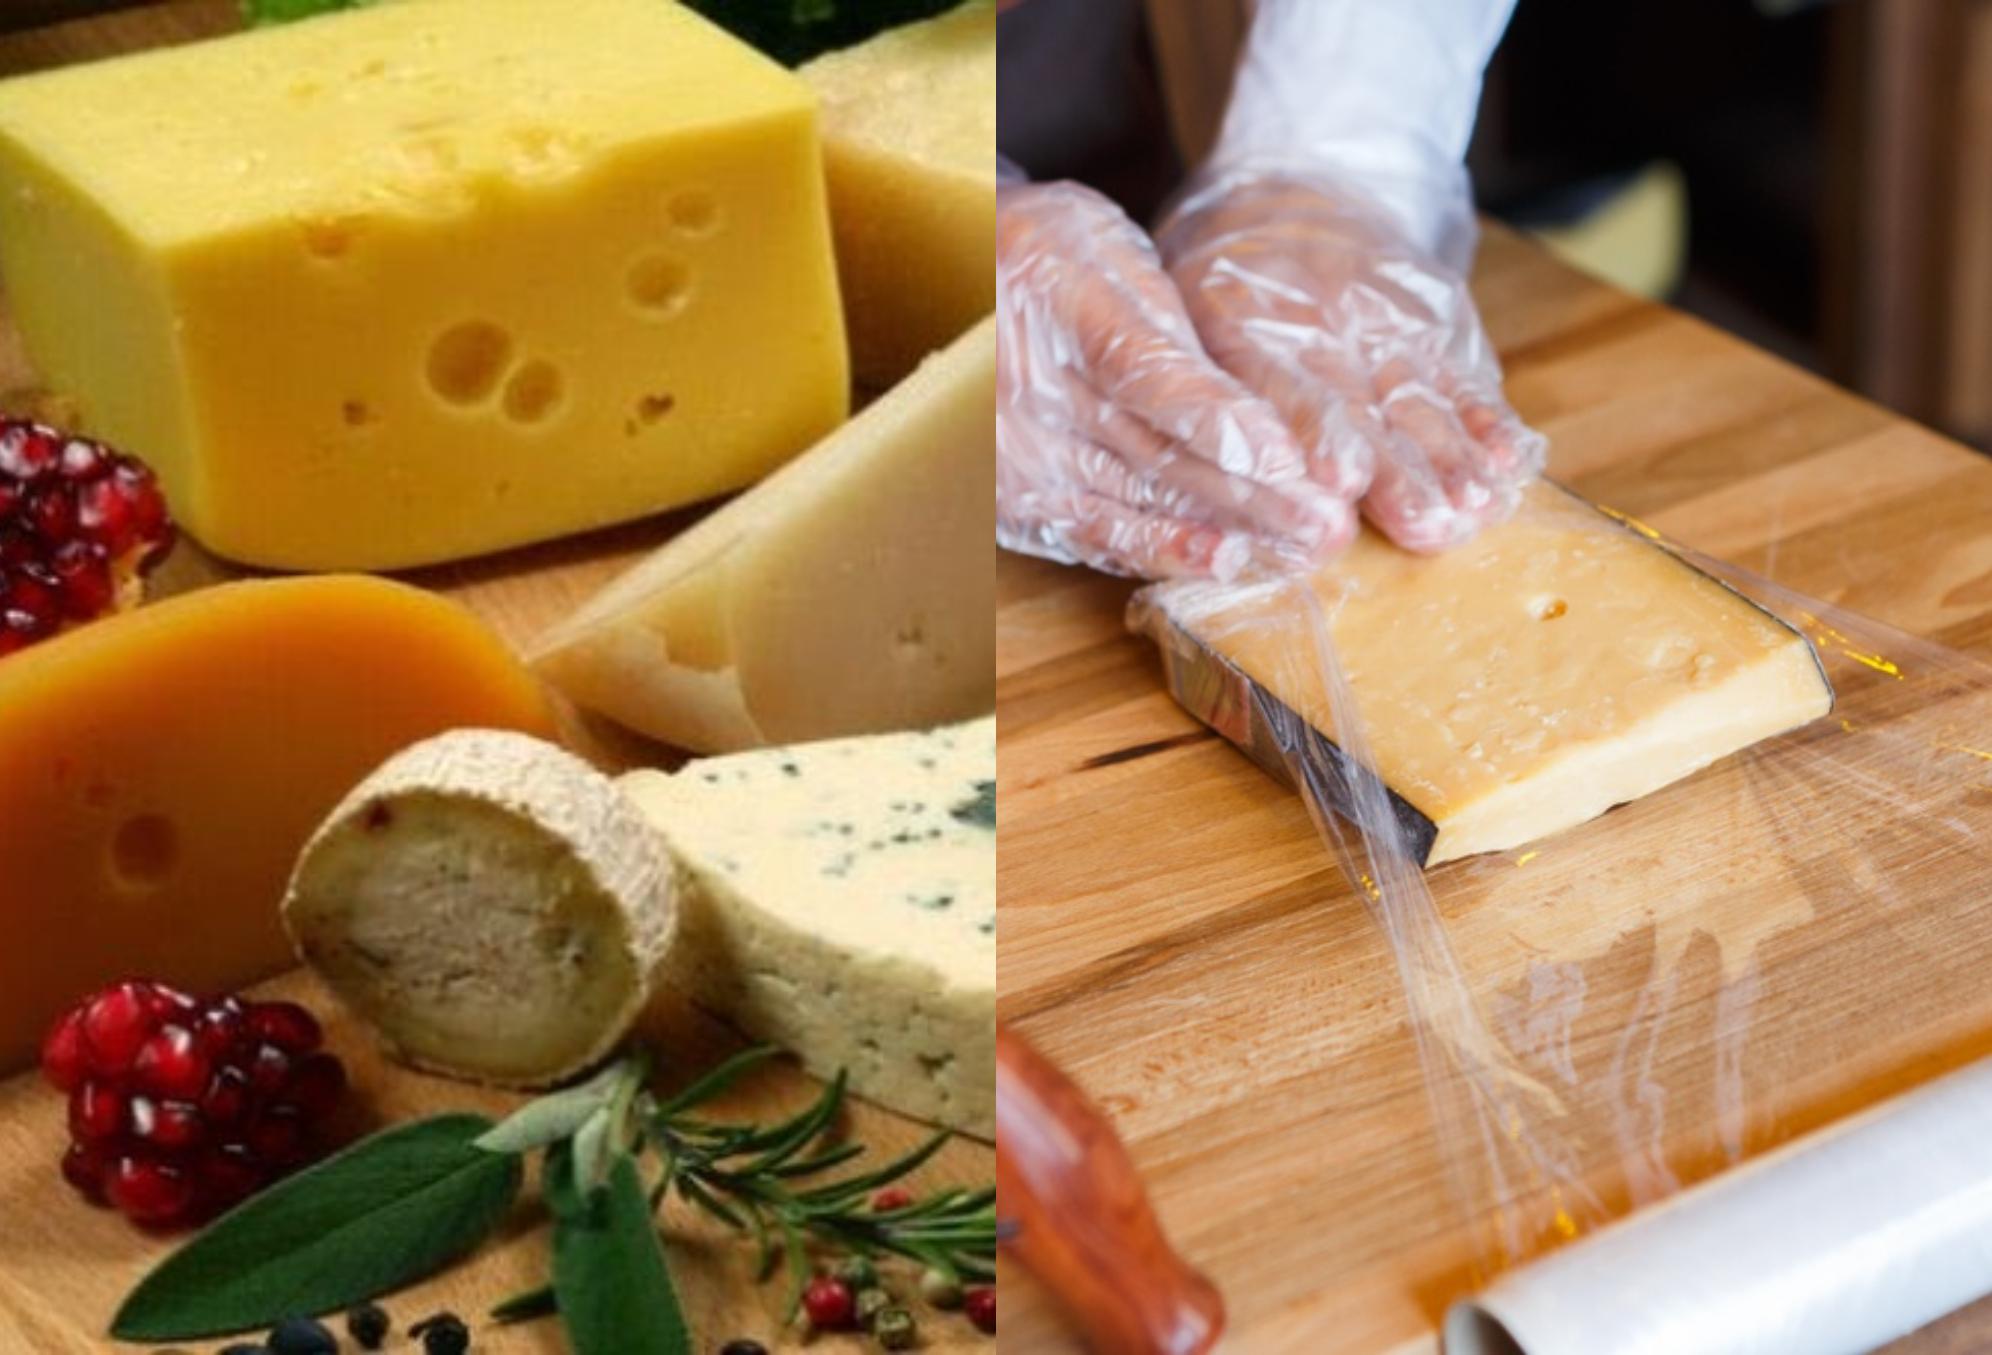 Αυτός είναι ο λόγος που δεν πρέπει να τυλίγουμε ποτέ το τυρί σε μεμβράνη τροφίμων – Δείτε τον σωστό τρόπο να διατηρείτε τα τυριά